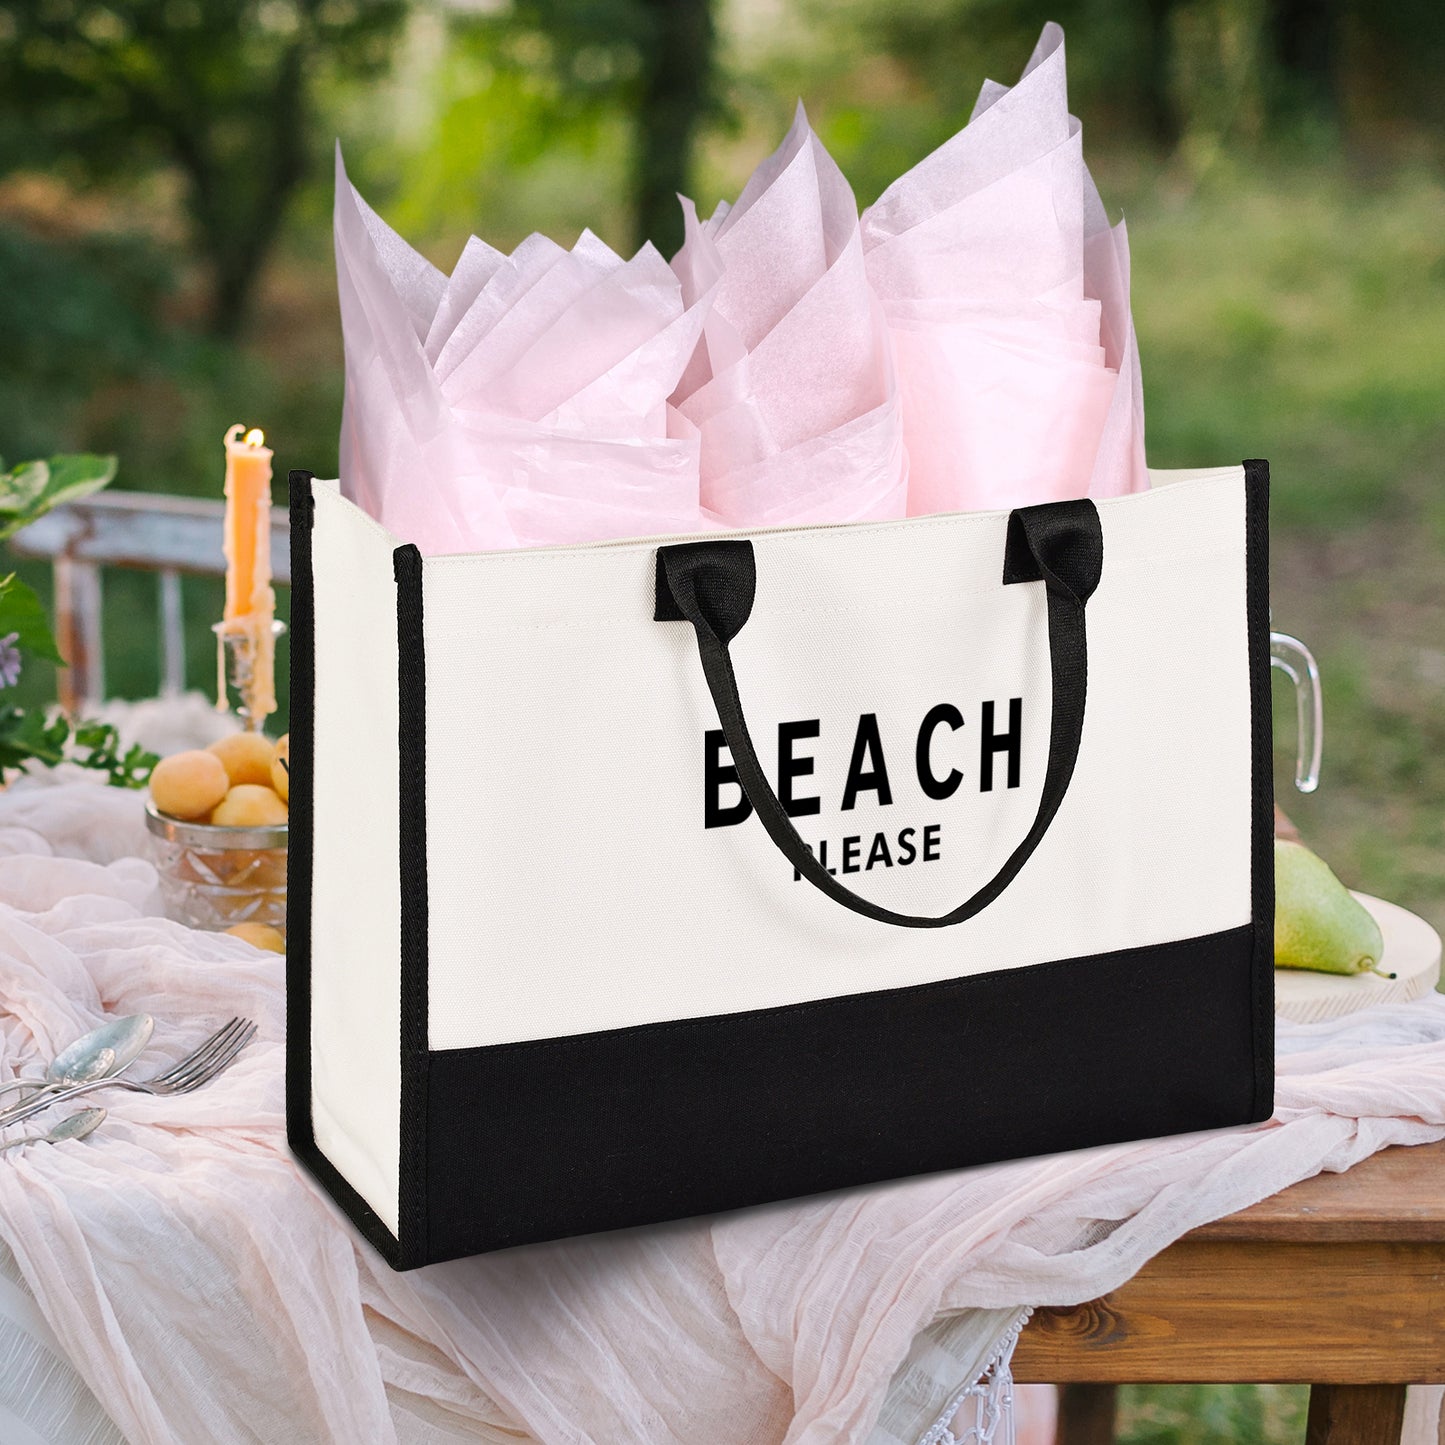 Lamyba Beach Please Bag, Canvas Beach Tote Bags for Women, Black and White